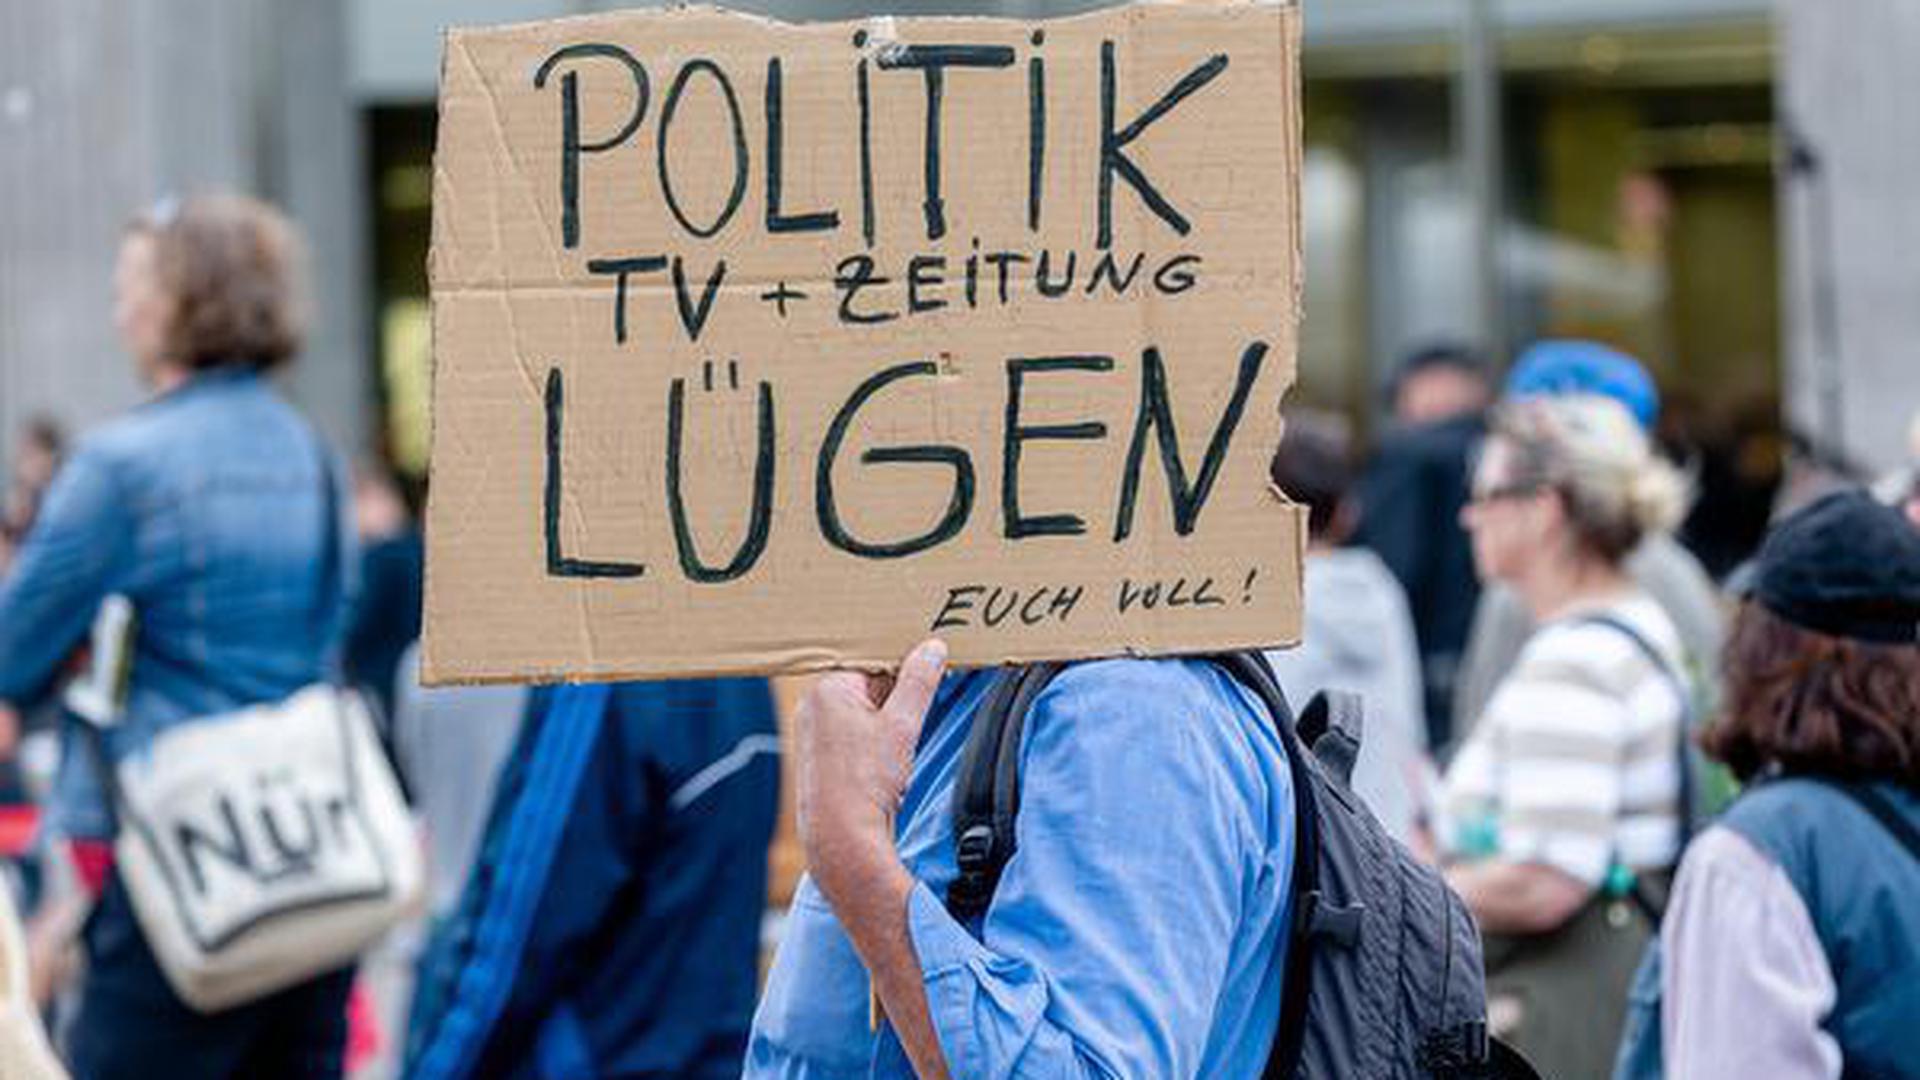 Ein Mann hält ein Plakat mit der Aufschrift « Politik, TV und Zeitung lügen euch voll!».